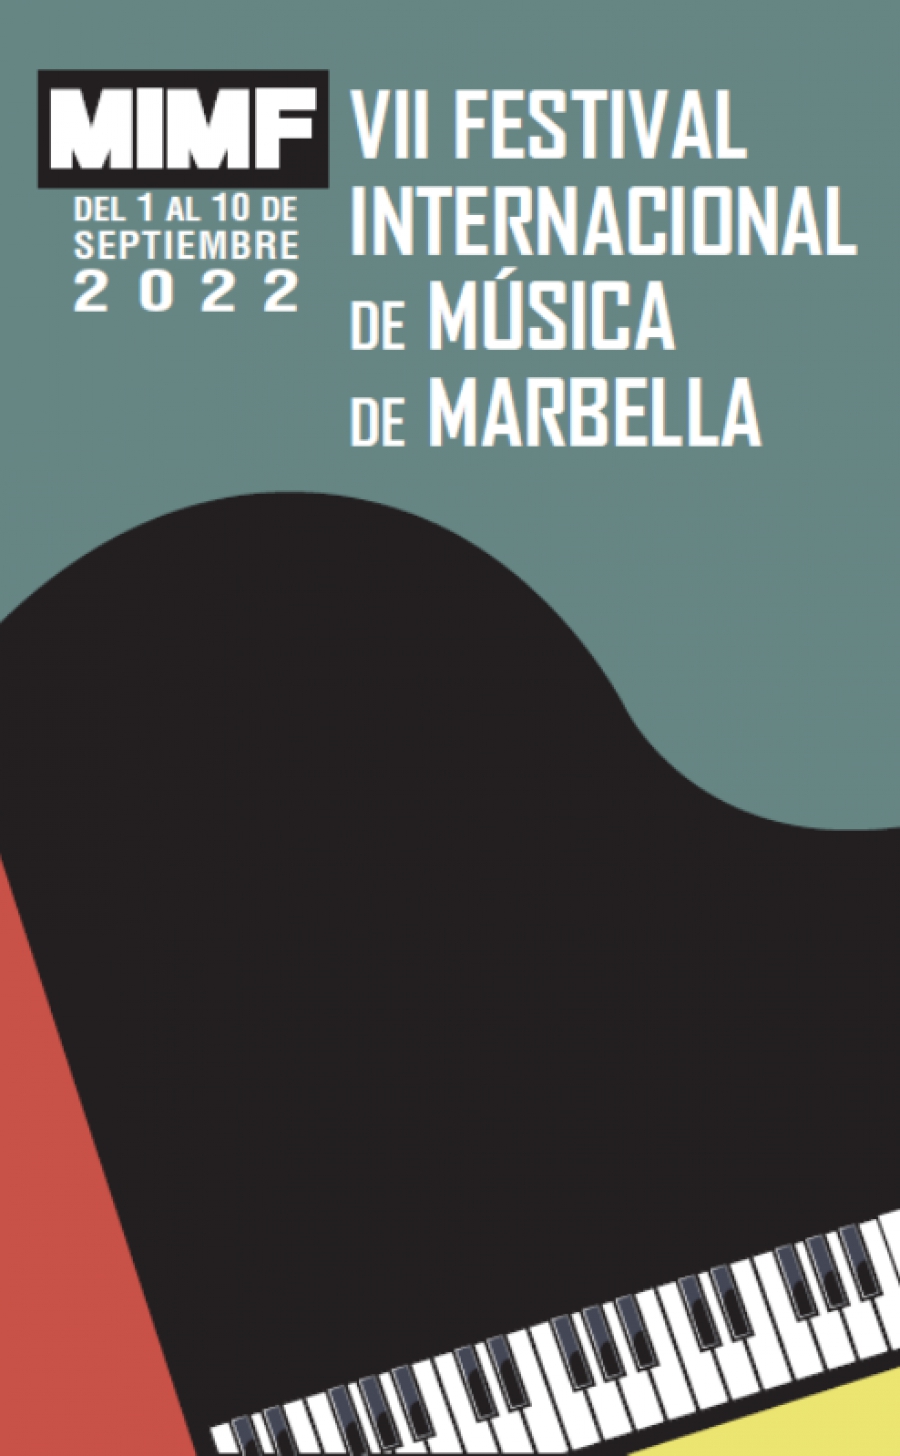 El pianista Michael Davidov y el saxofonista Albert Juliá pondrán el broche de oro al VII Festival Internacional de Música de Marbella, que se clausurará mañana sábado 10 de septiembre